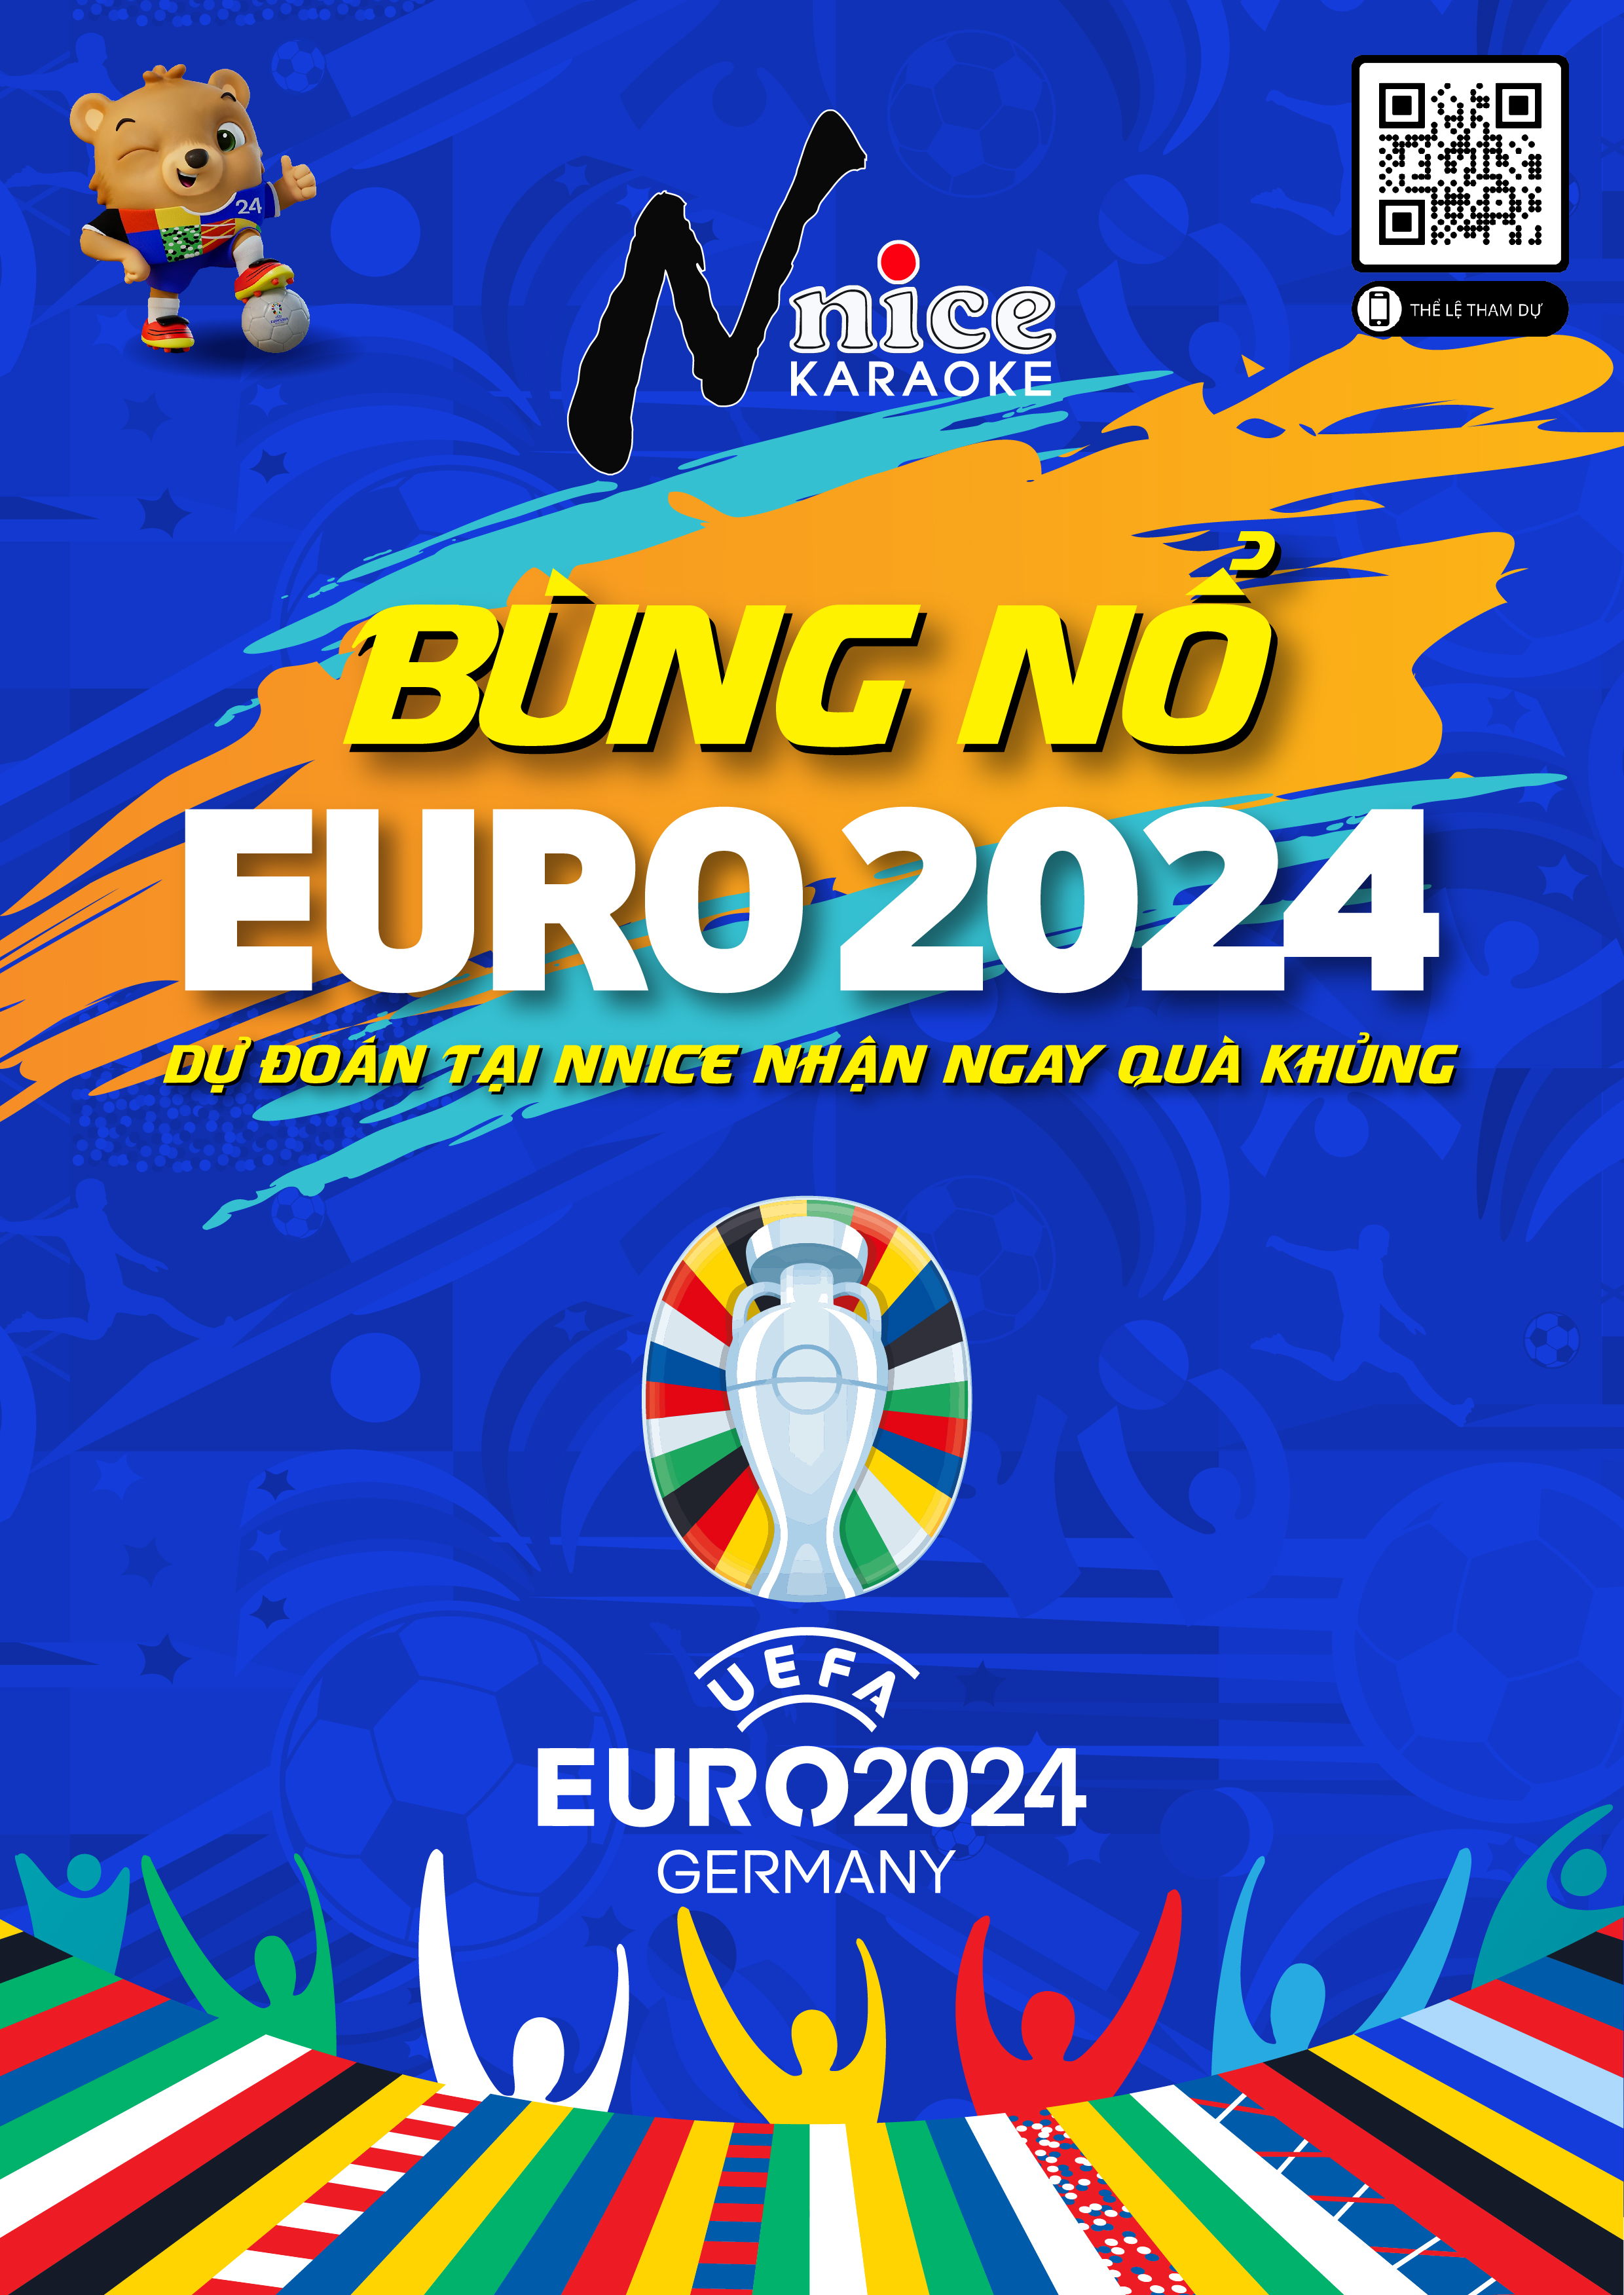 BÙNG NỔ EURO 2024